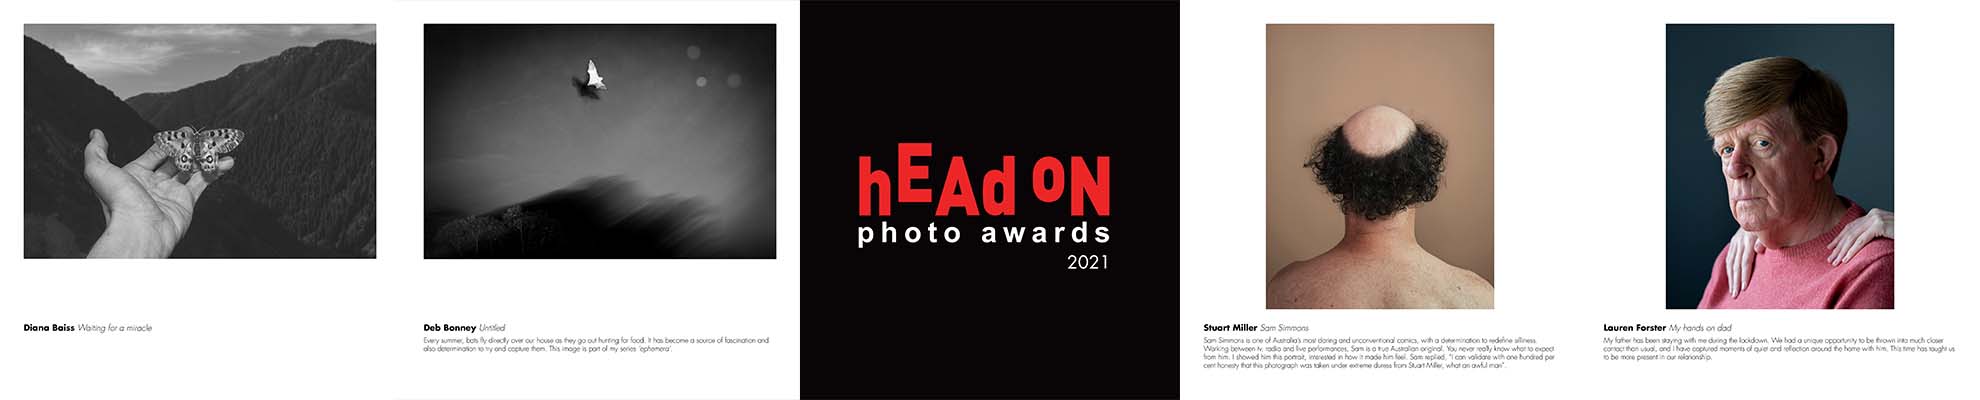 Head On Photo Awards catalogue sample